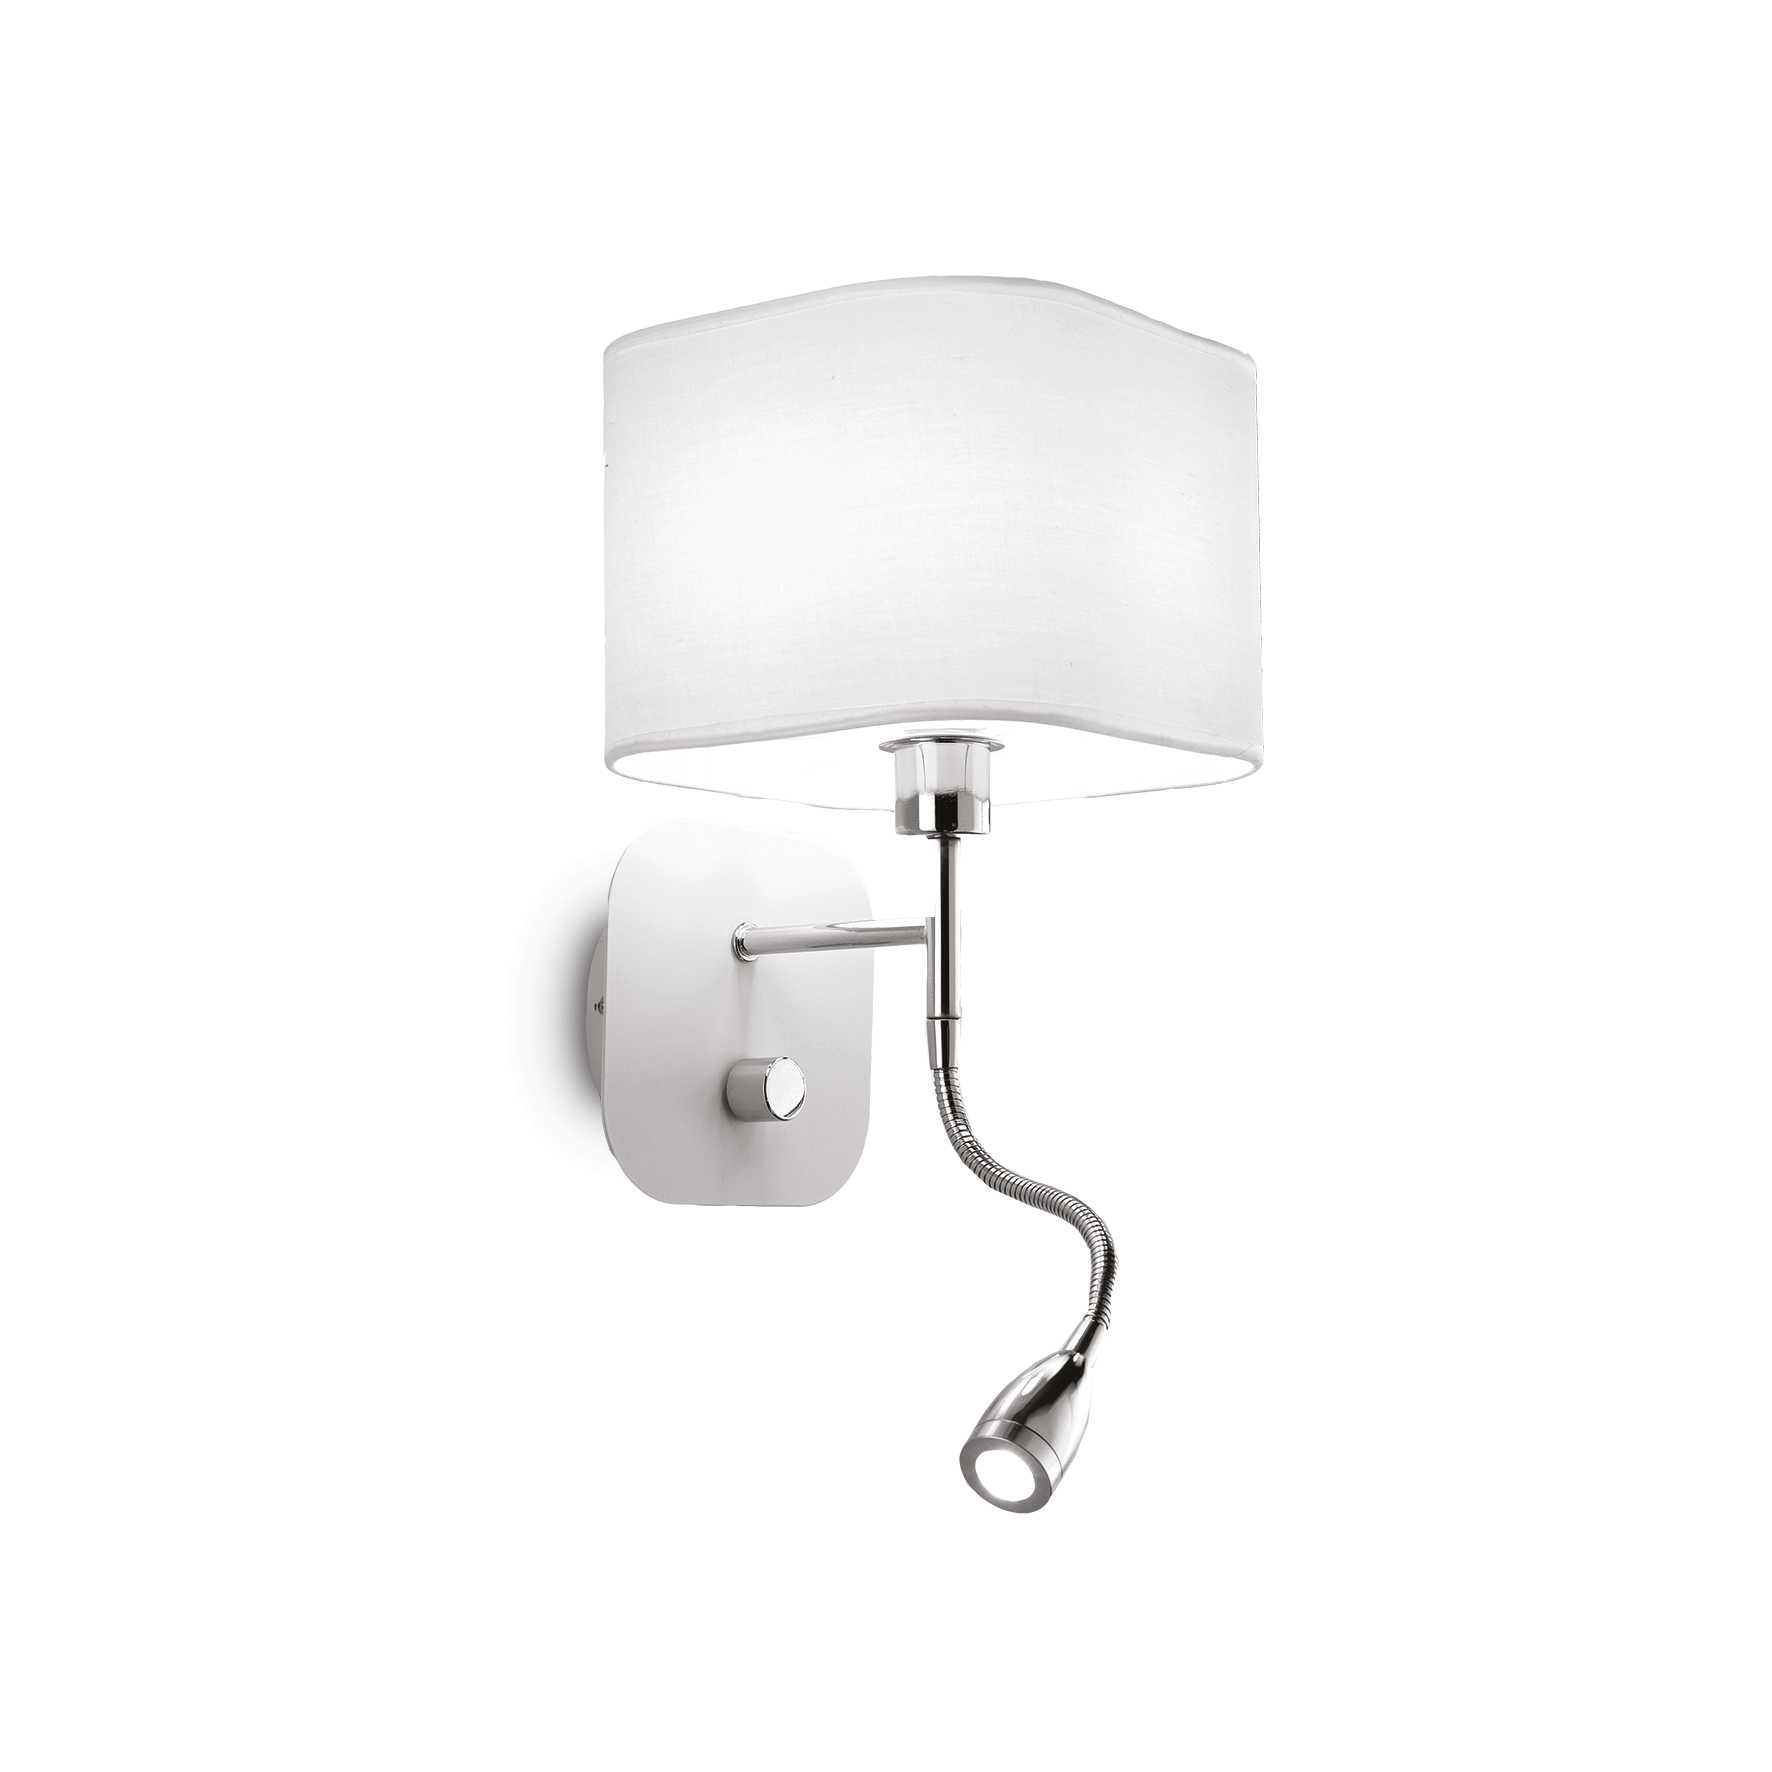 AD hotelska oprema Zidna lampa Holiday ap2- Bijele boje slika proizvoda